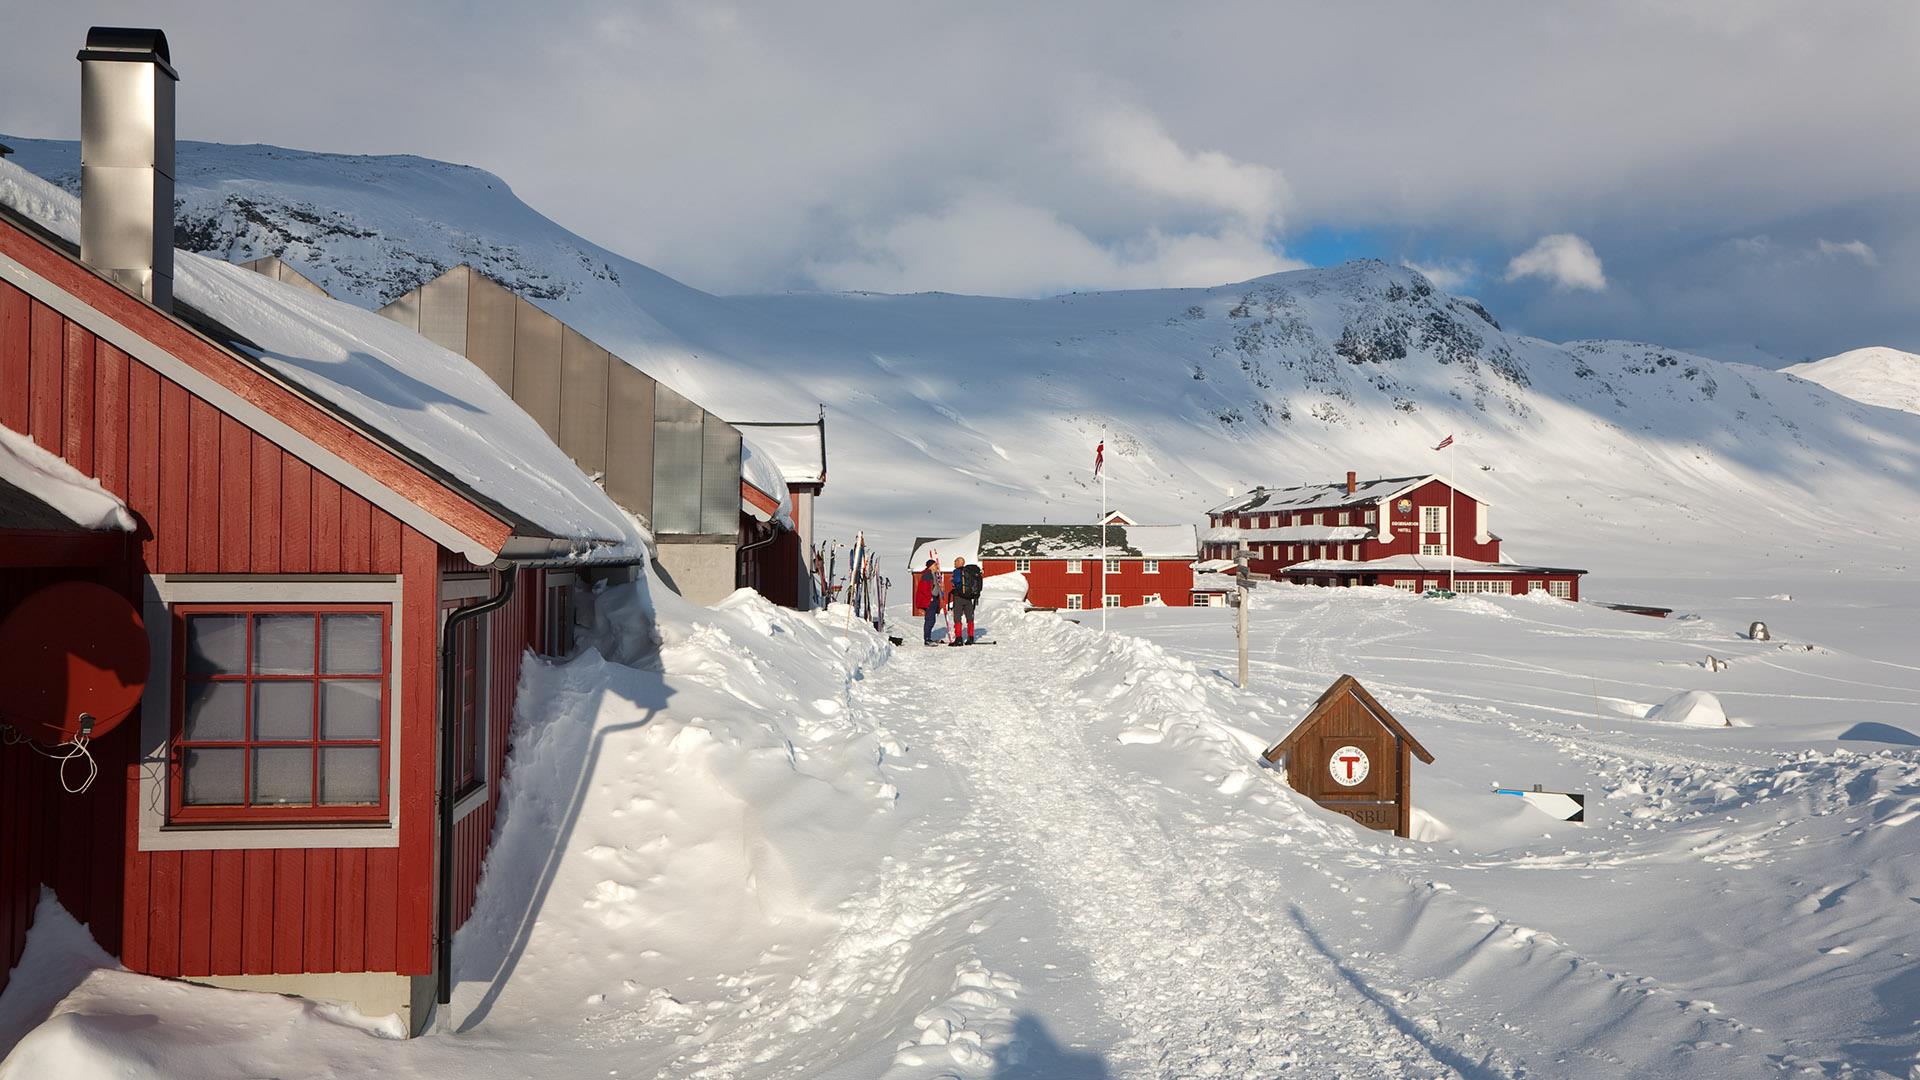 Rote Gebäude (eine Berghütte und ein Hotel) in den Bergen im Winter mit Mengen von Schnee